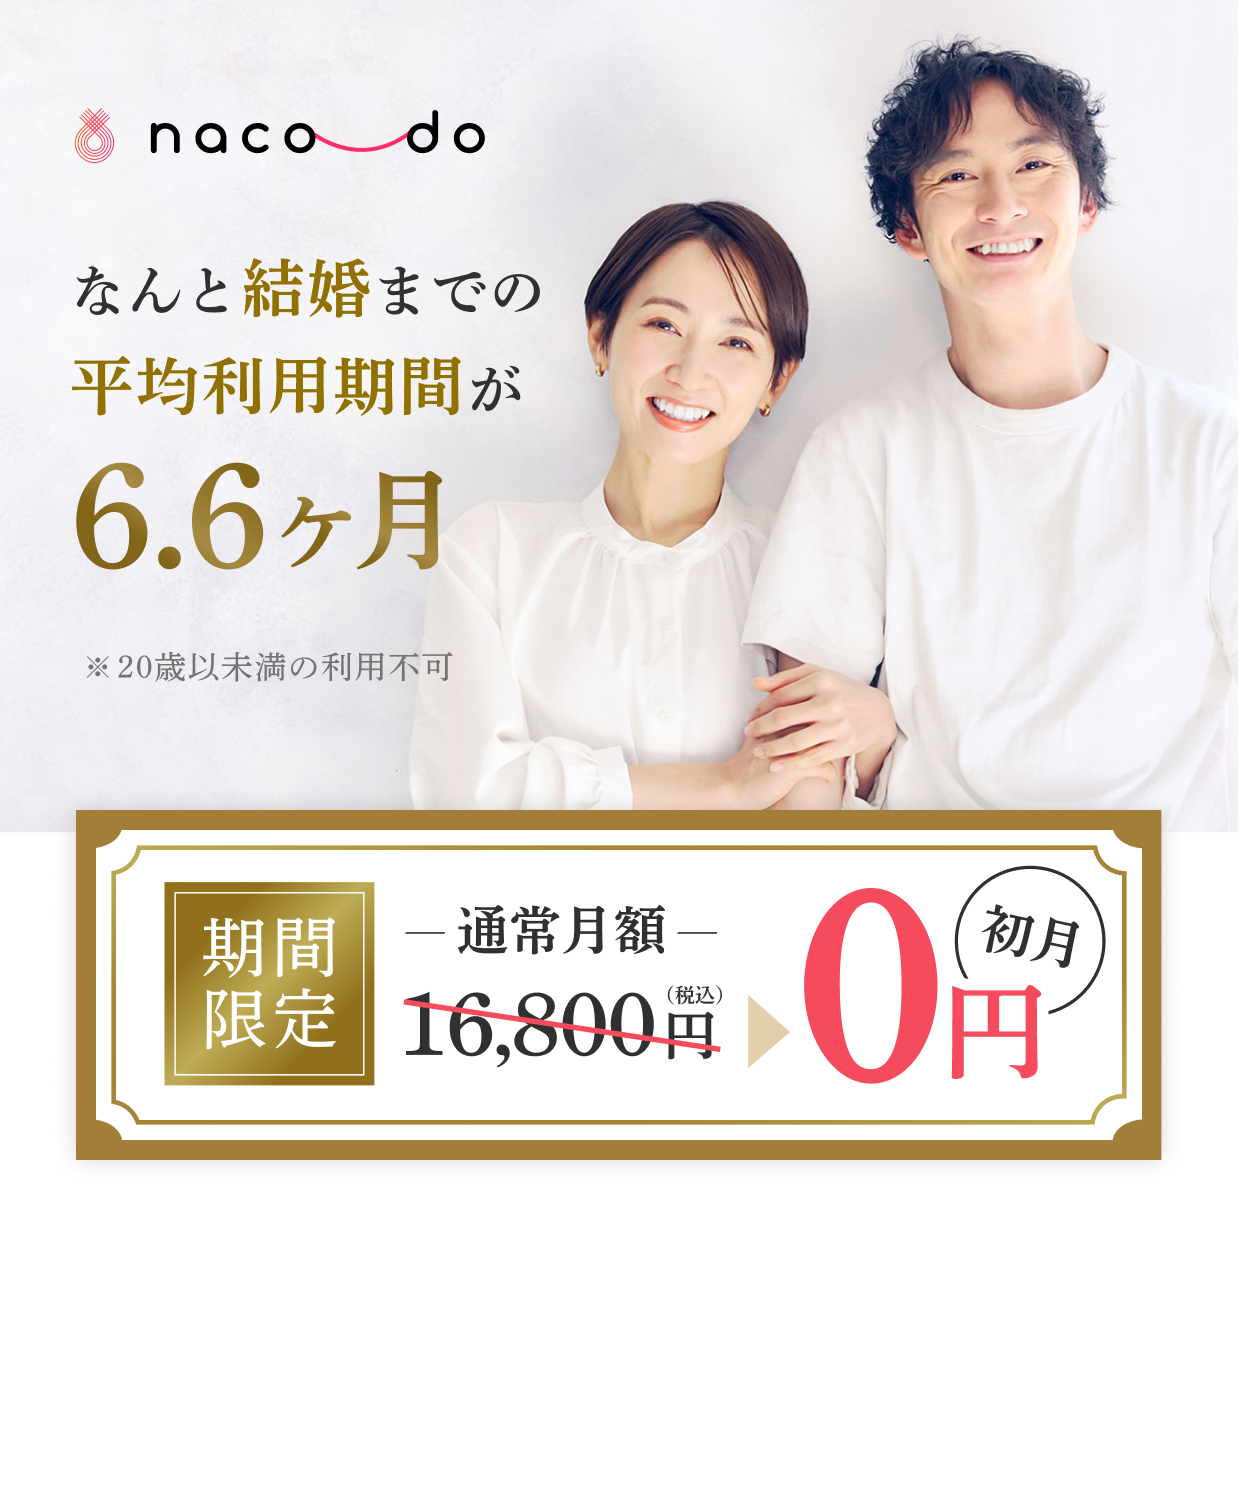 婚活応援キャンペーン。日本全国対応オンライン婚活ならnaco-do。